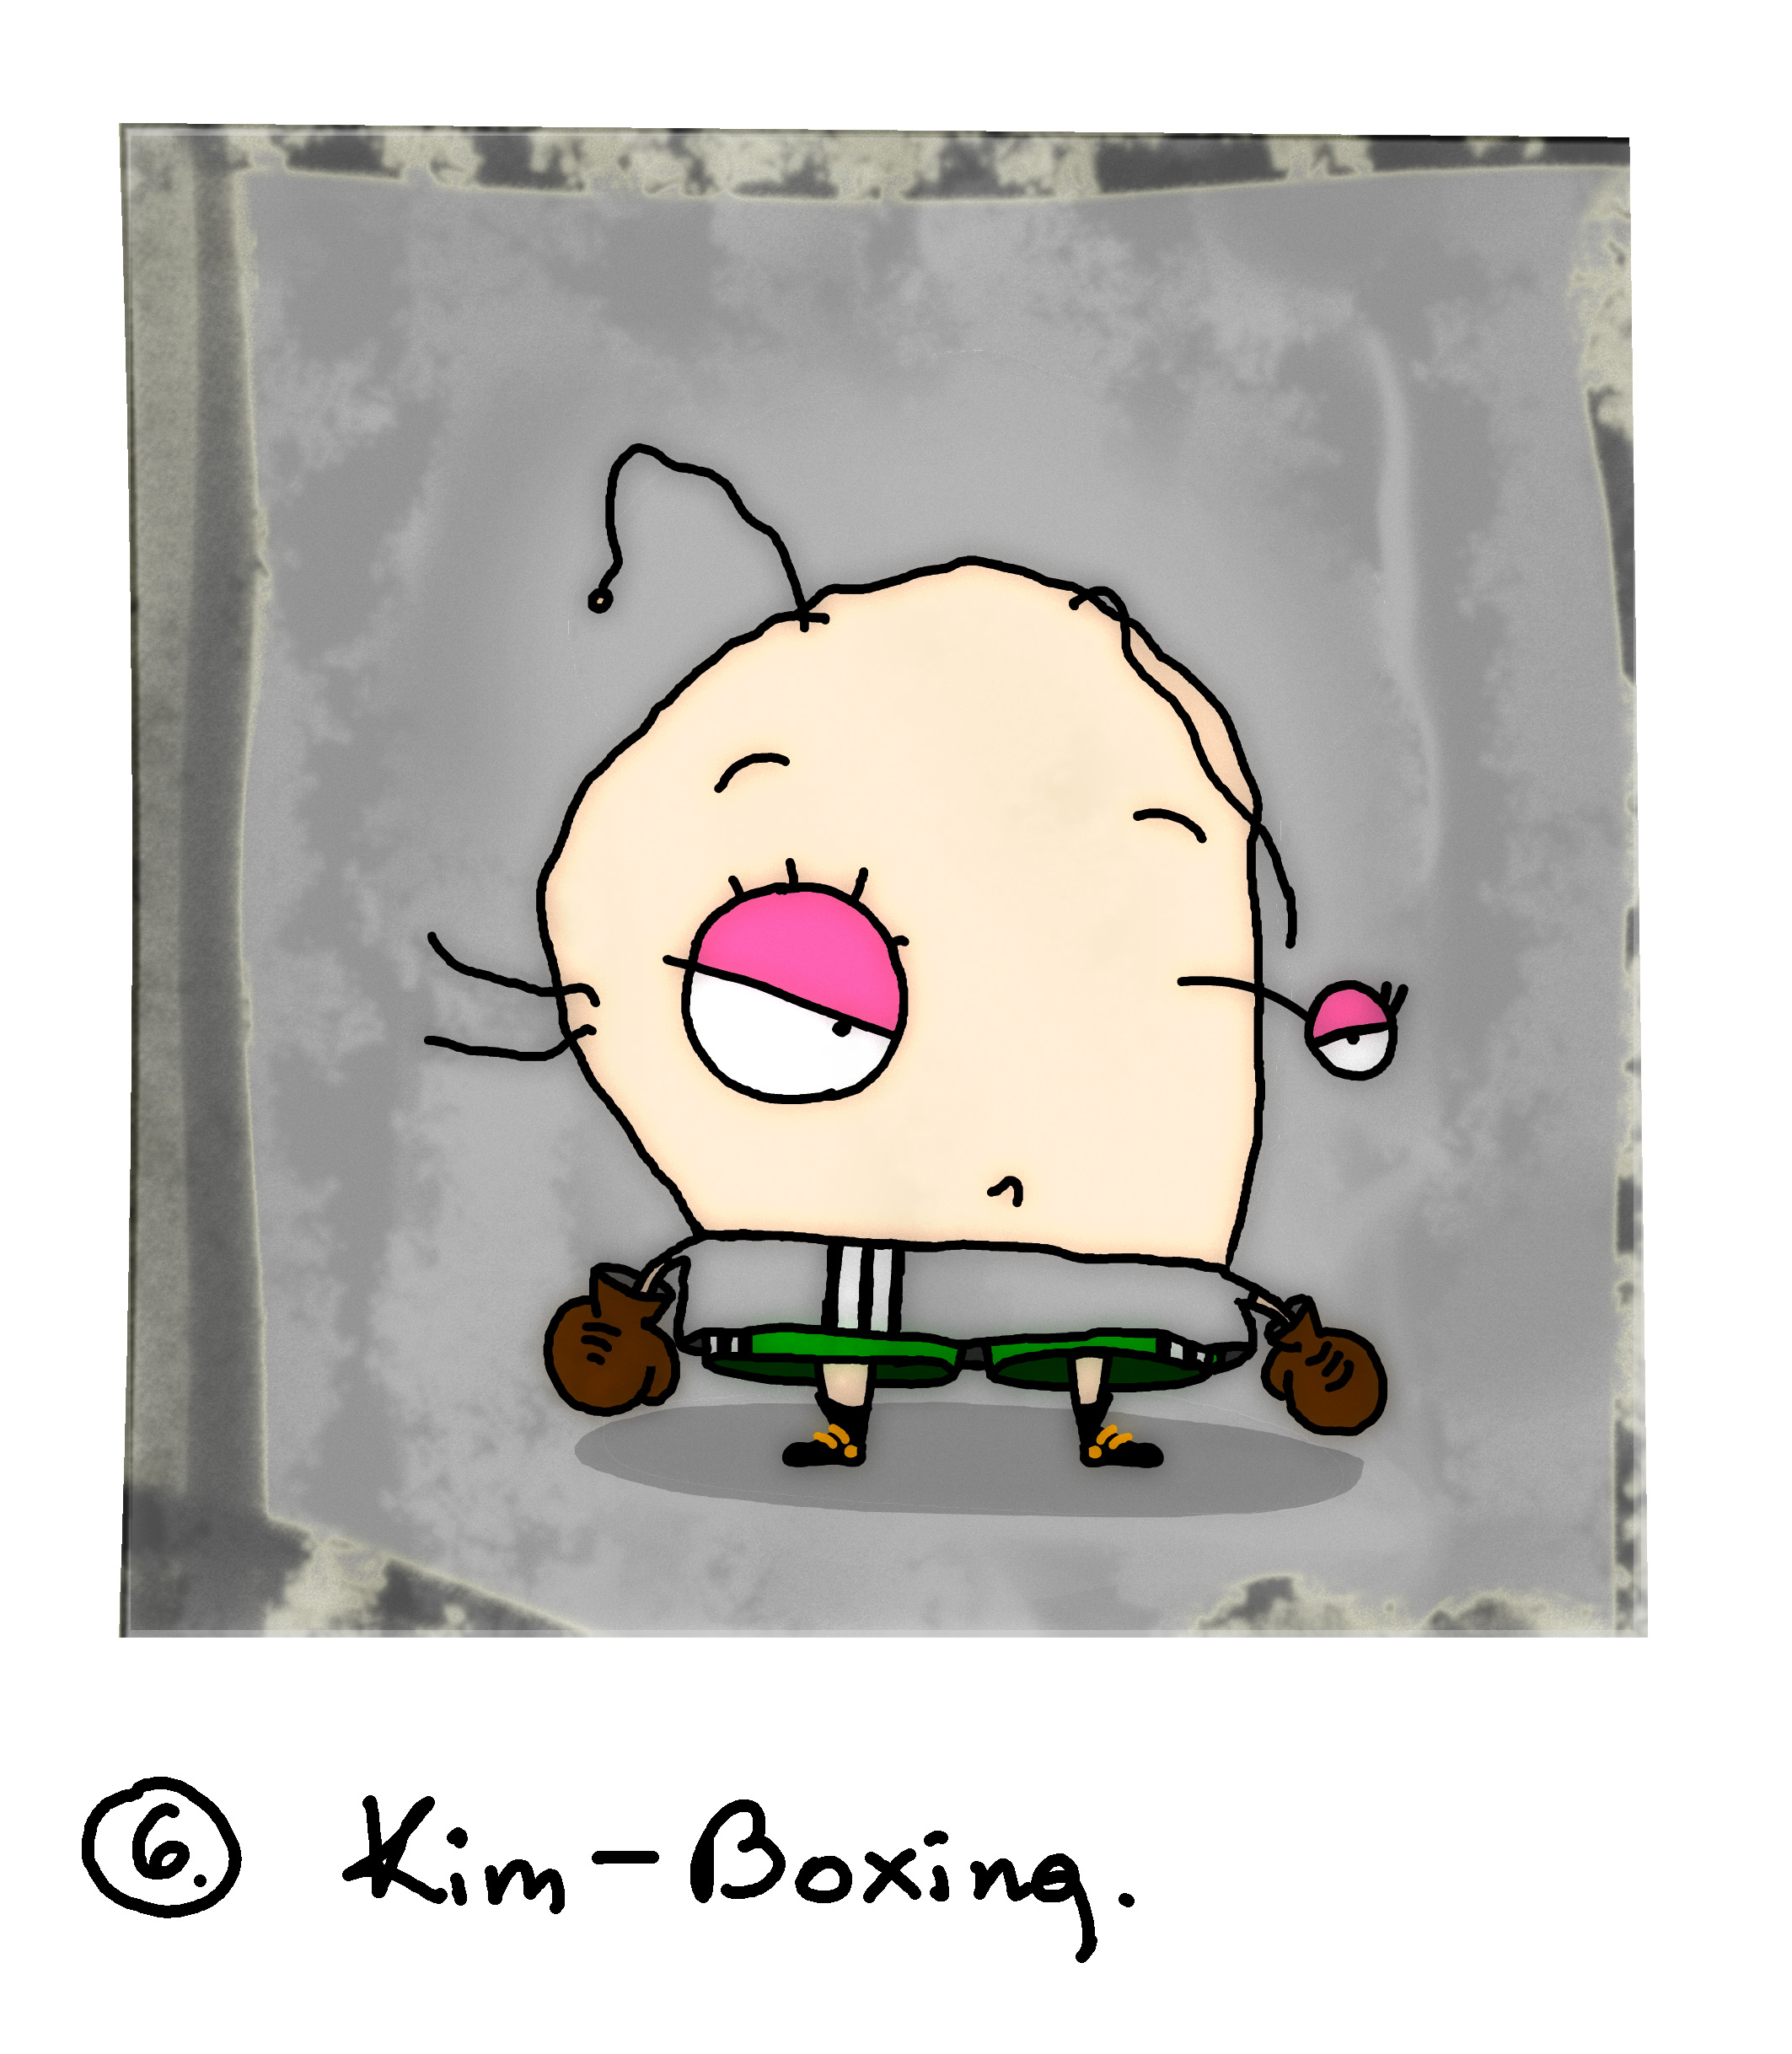 Futu-cocky_006. Kim Boxing